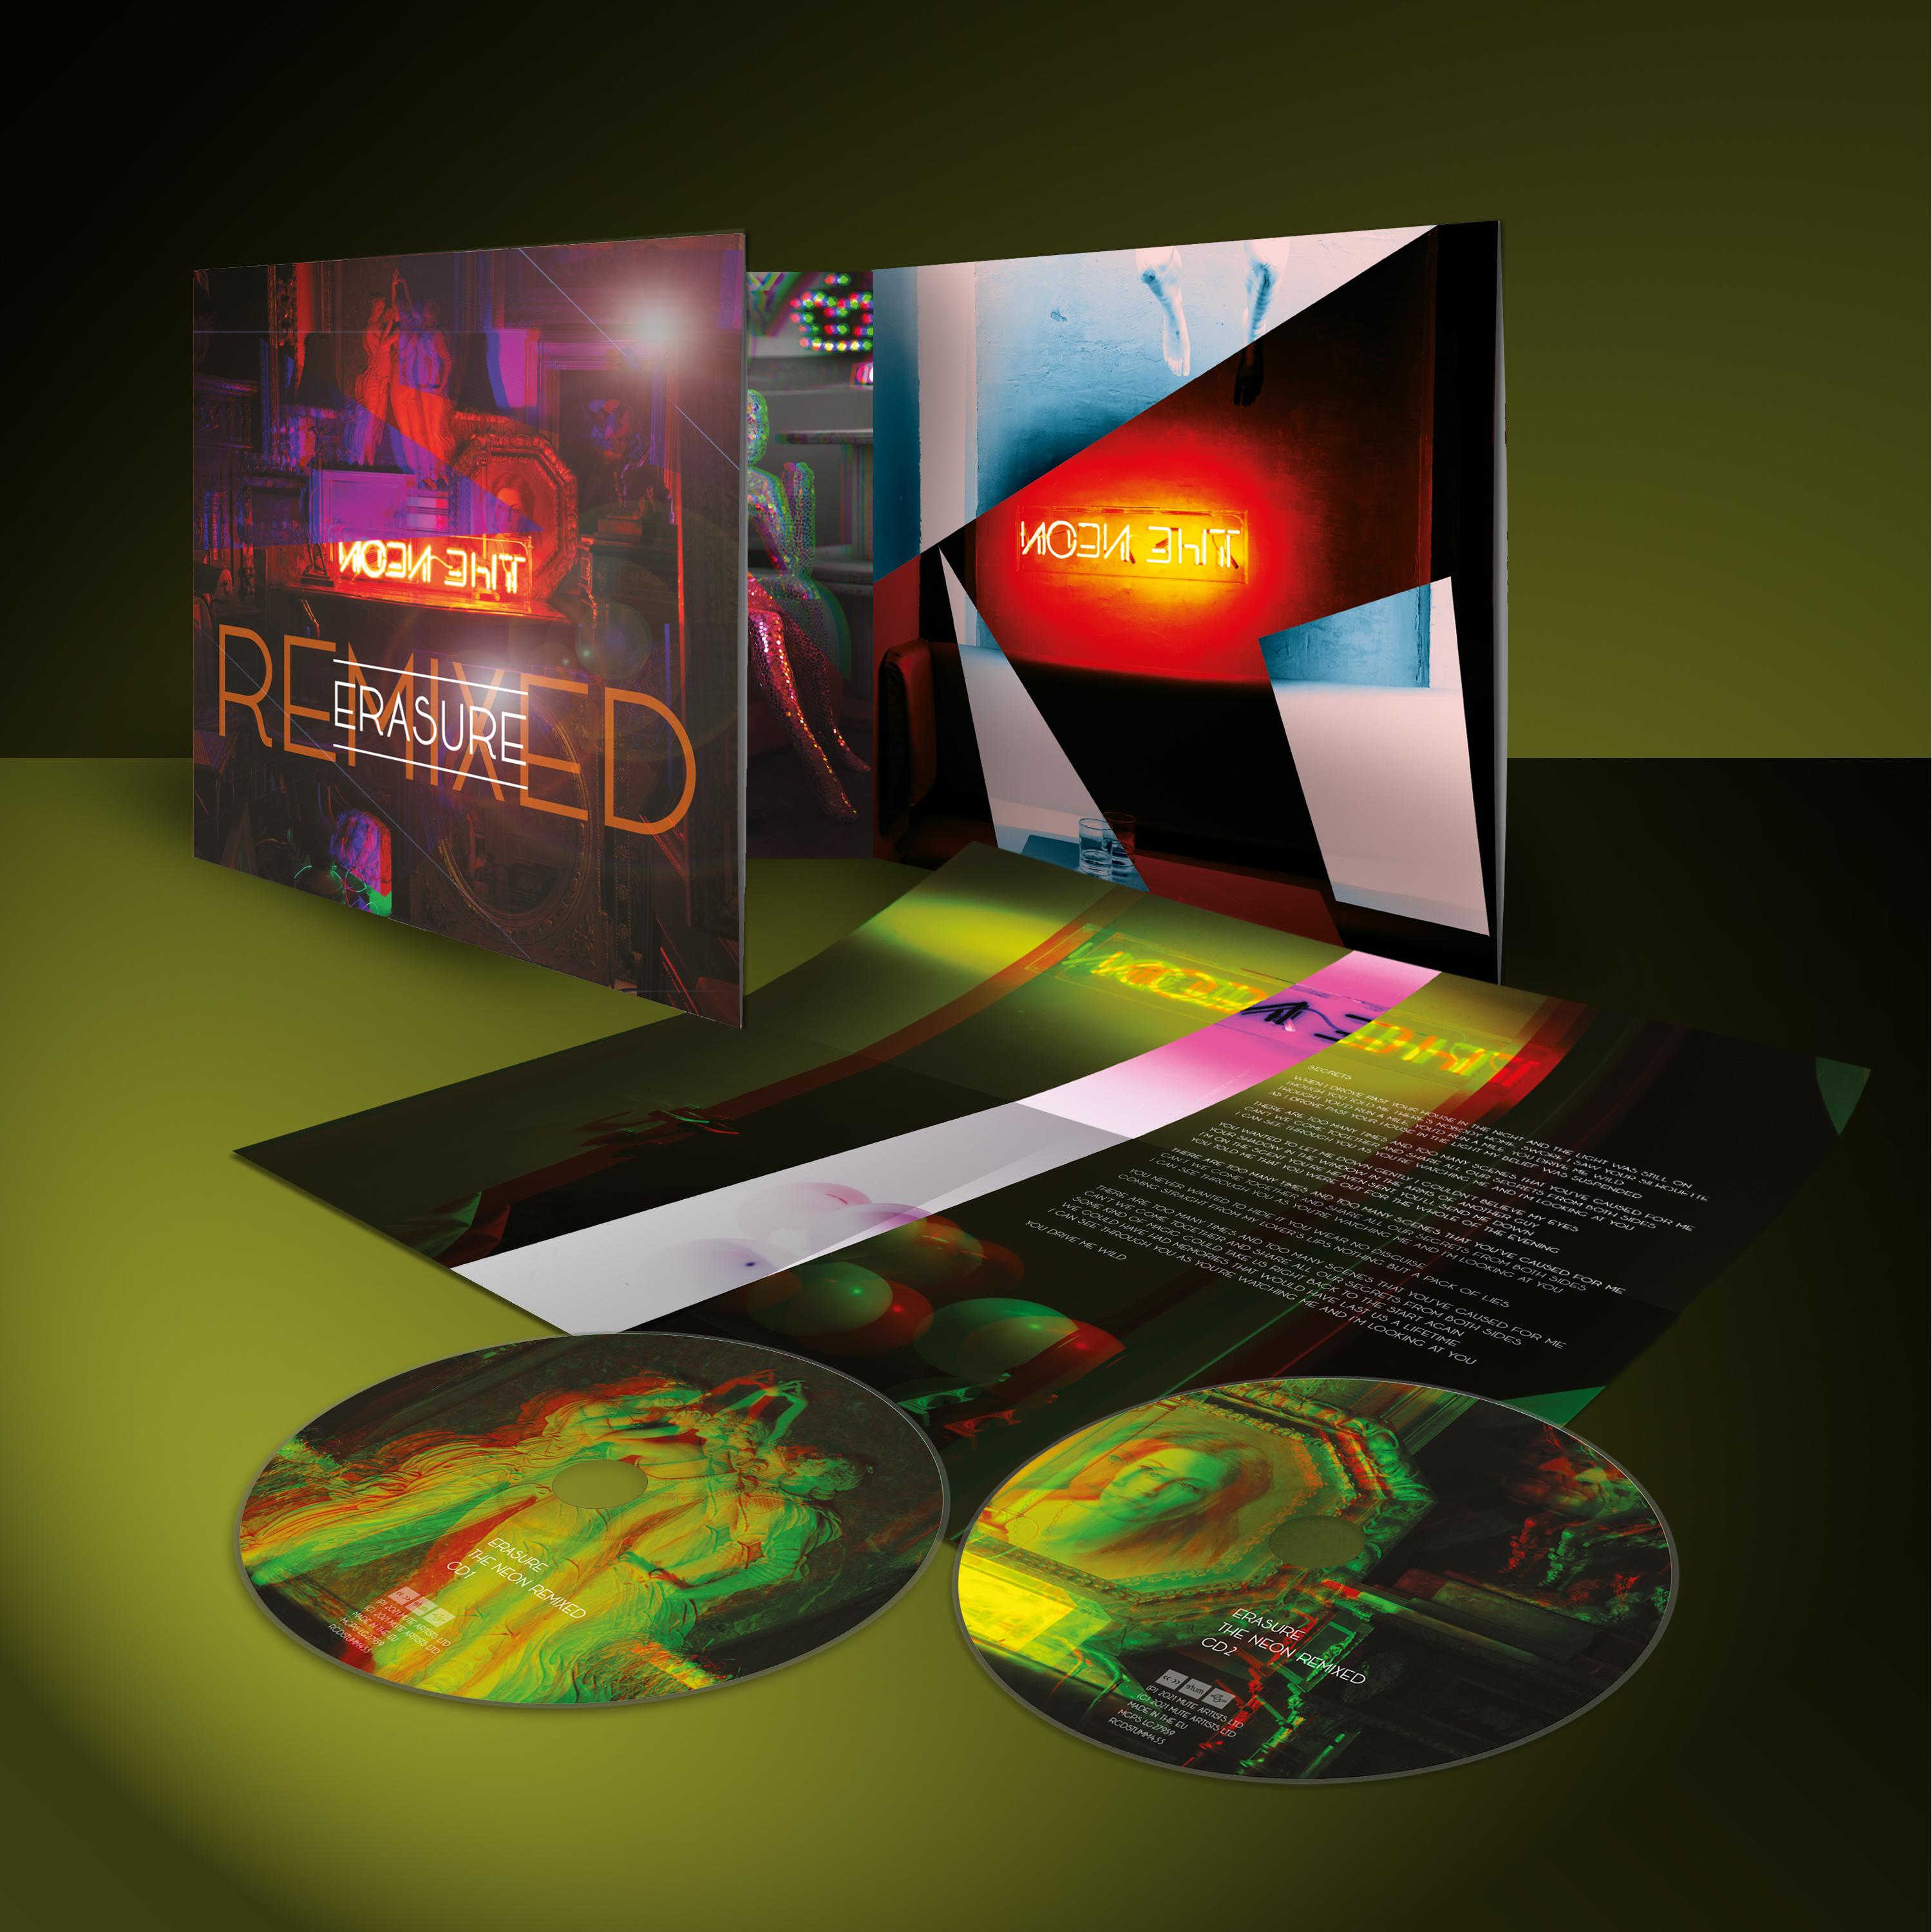 Erasure The Neon Remixed (2CD Deluxe Album)